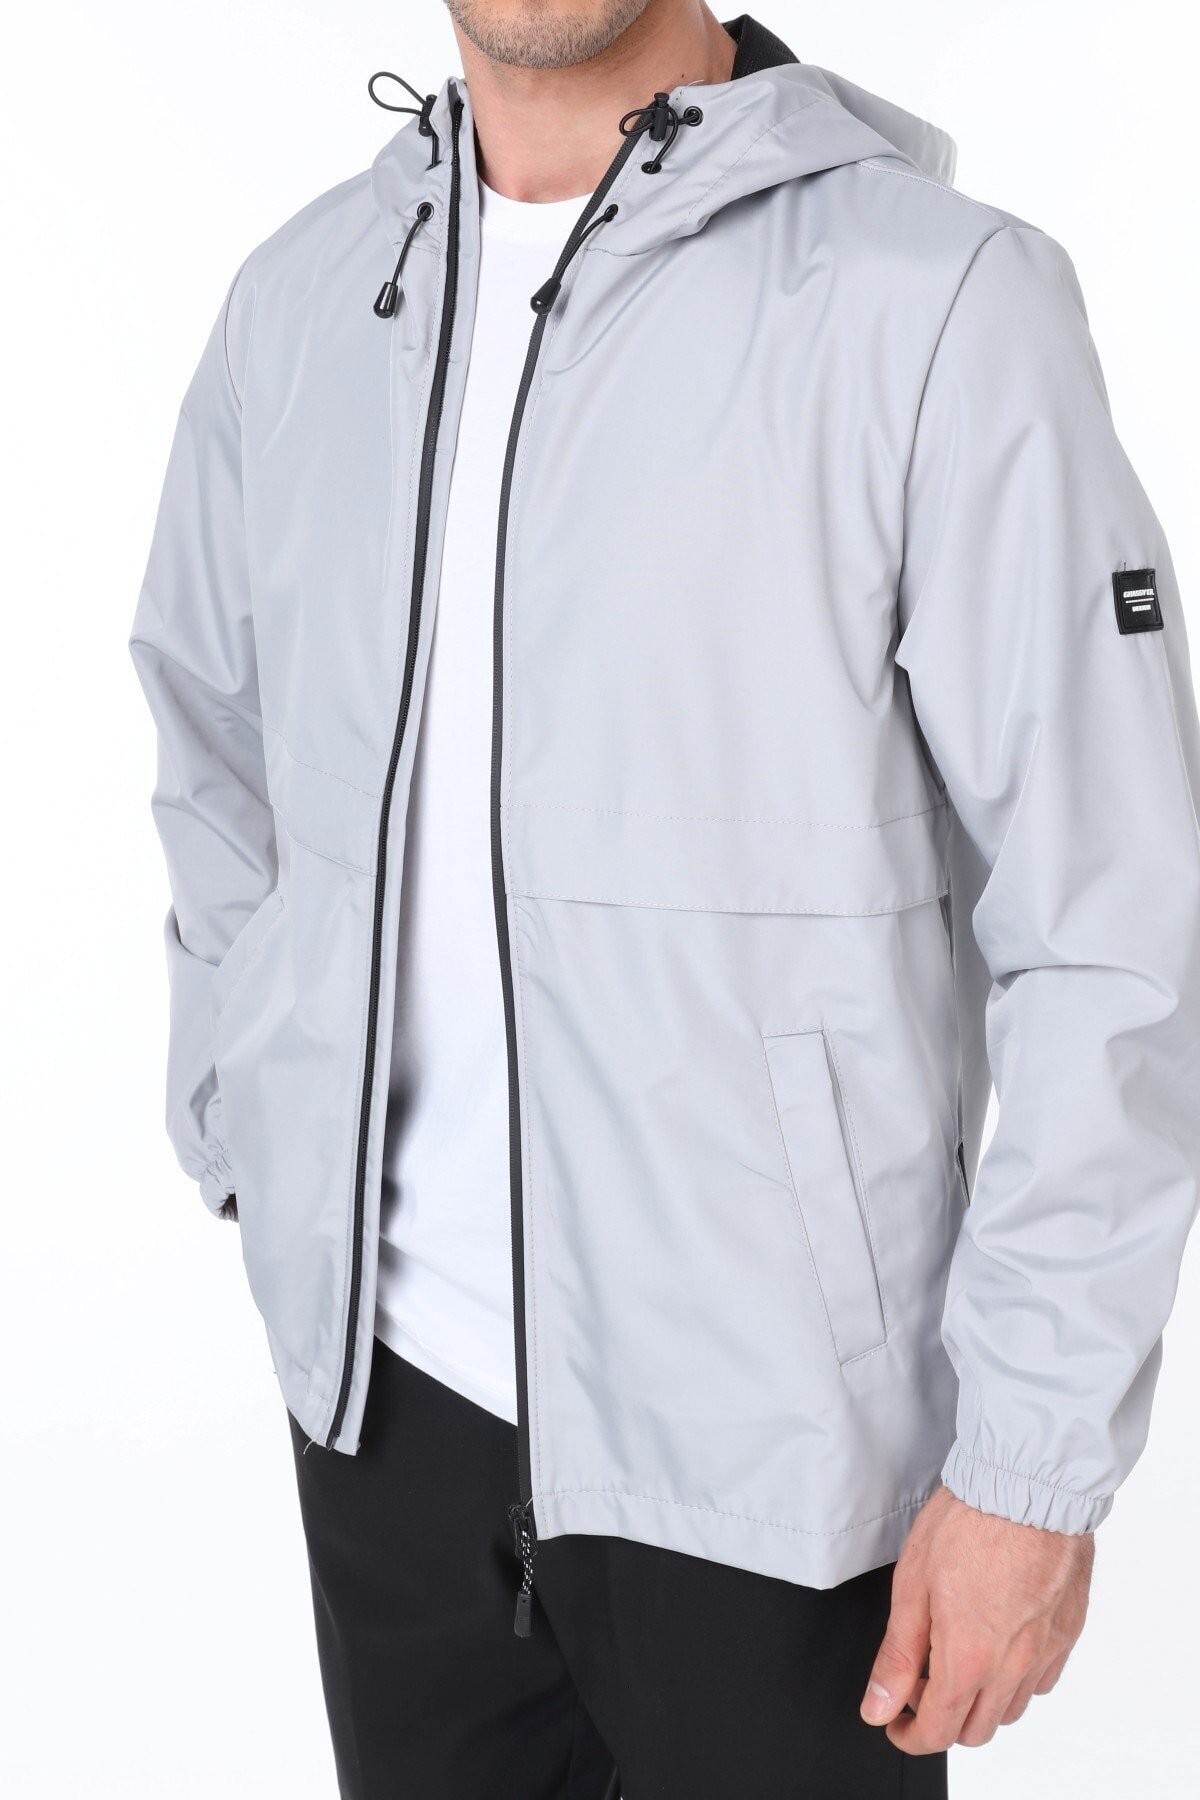 Ghassy Co.Erkek Rüzgarlık/Yağmurluk Outdoor Yırtmaç Detaylı Mevsimlik Taş Spor Ceket - GRİ